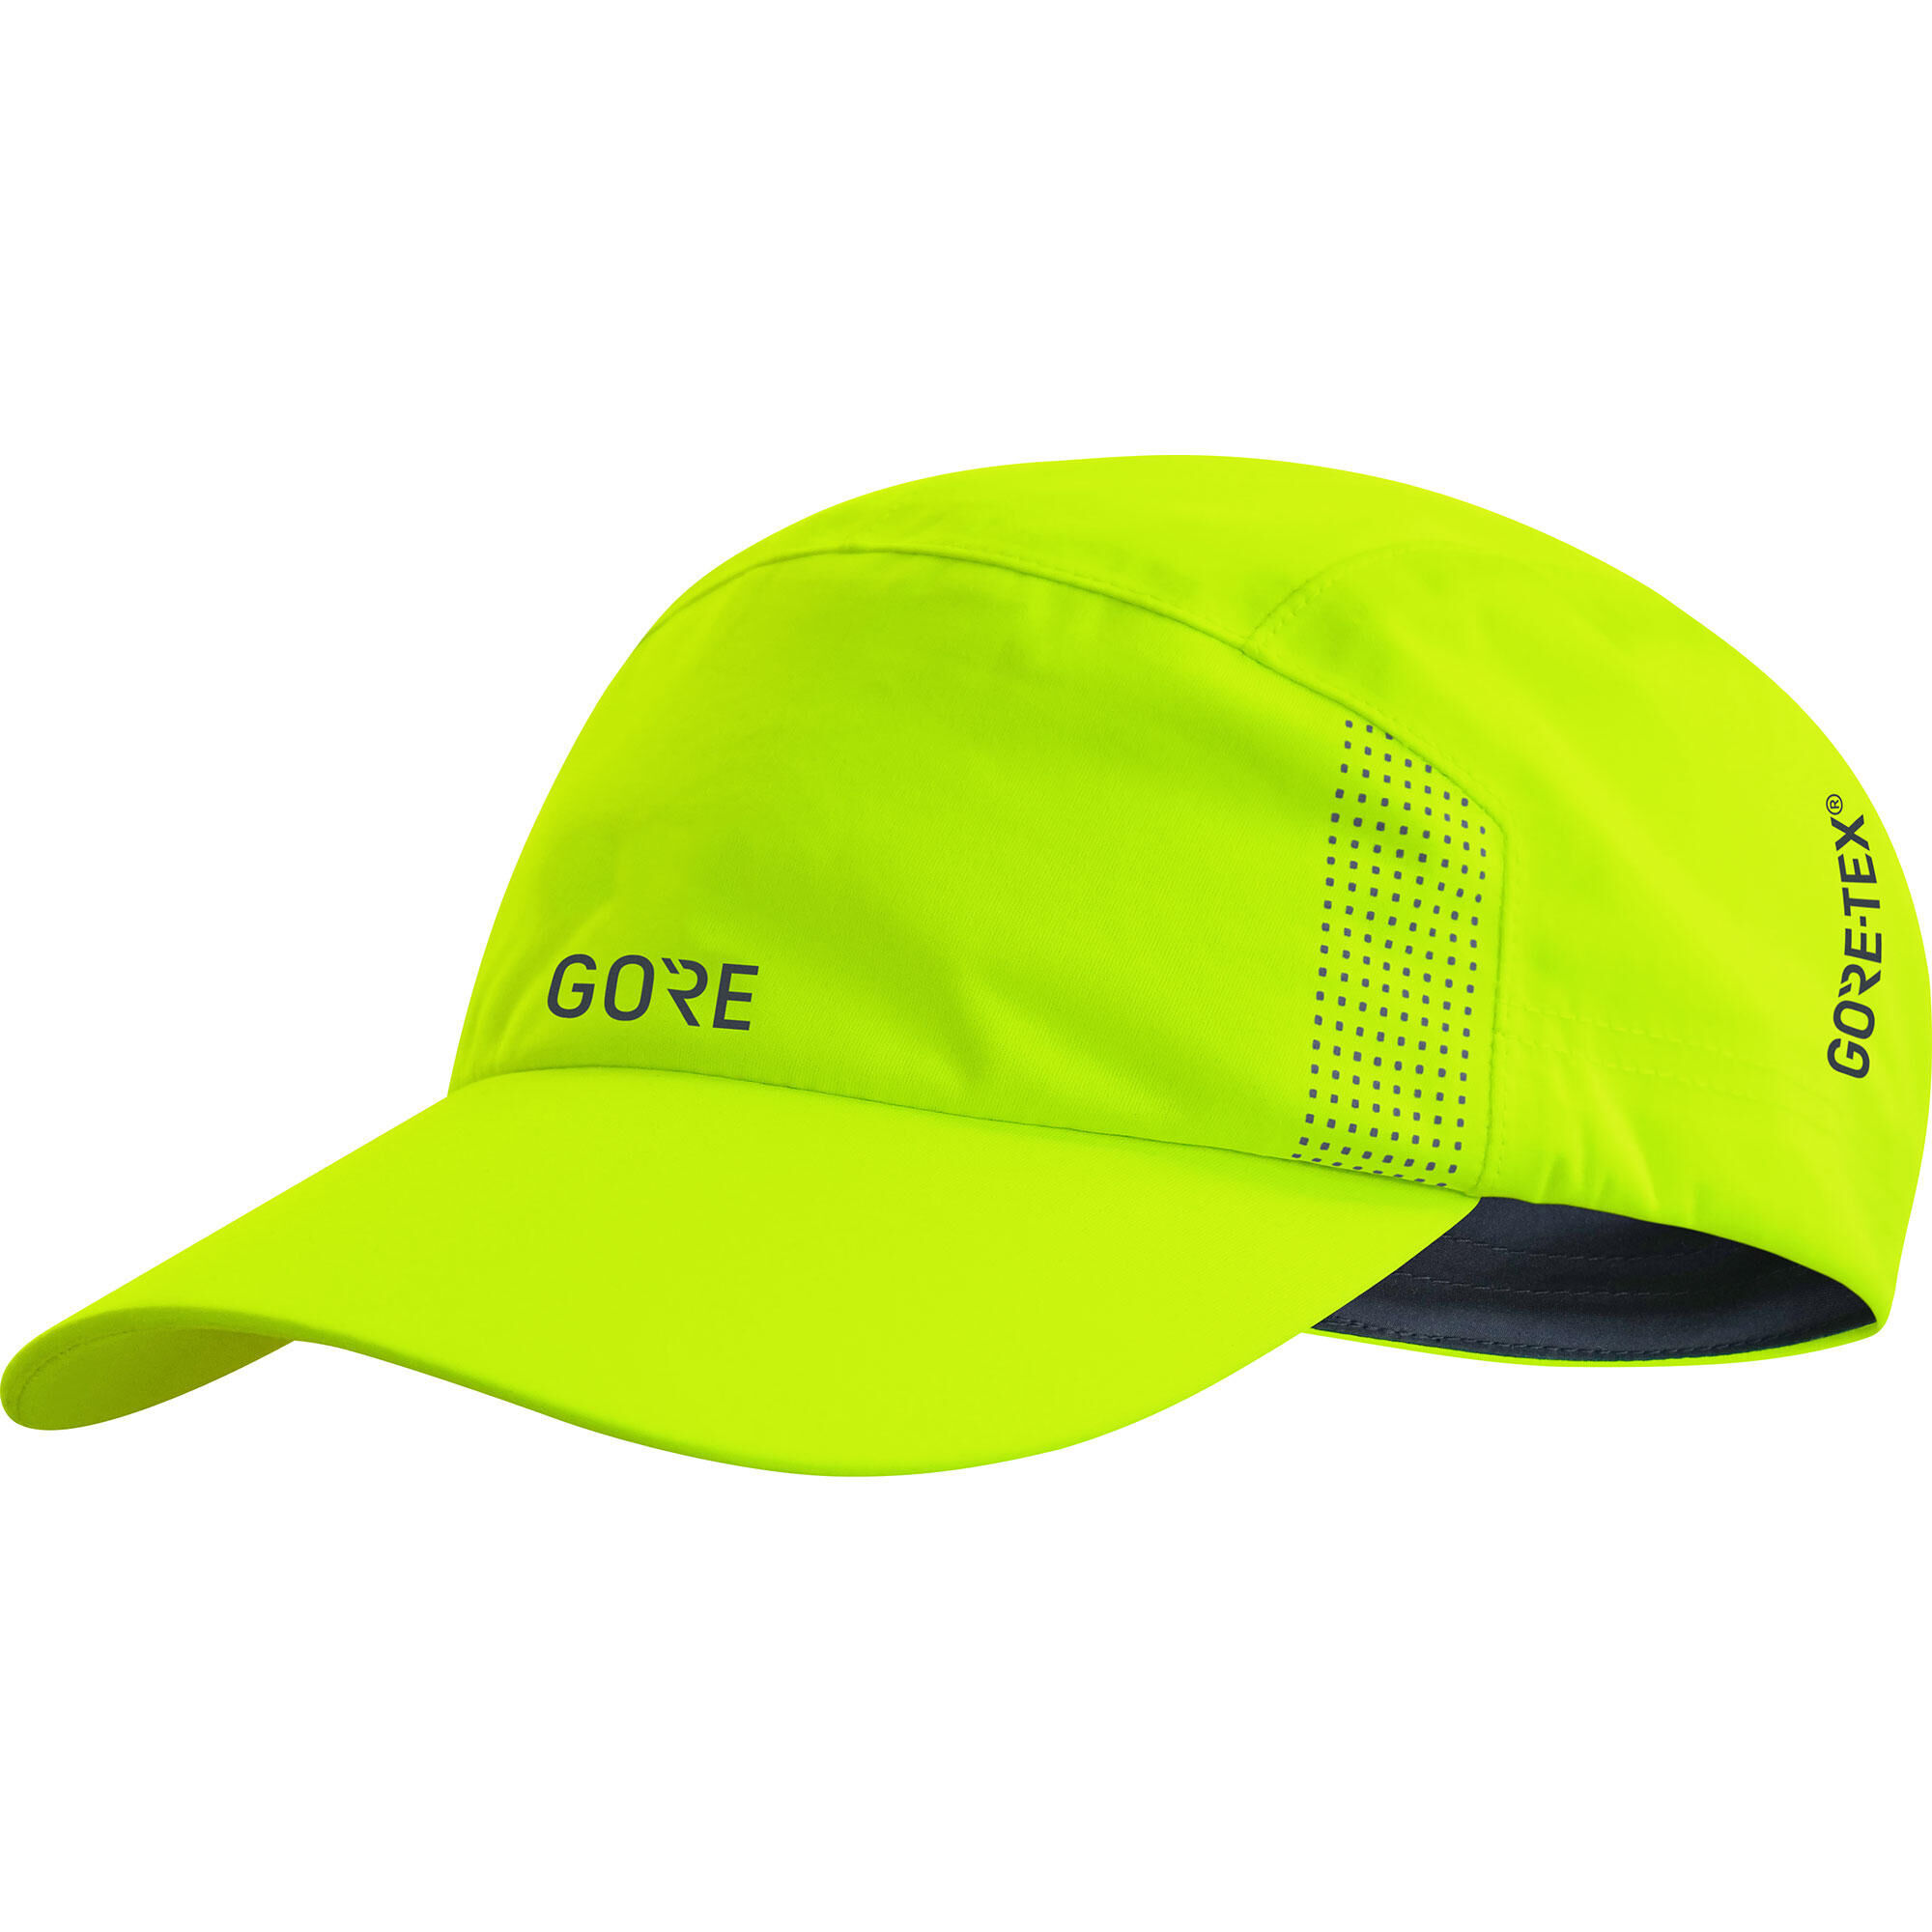 Gore Wear Gore-Tex Cap - Cappellino